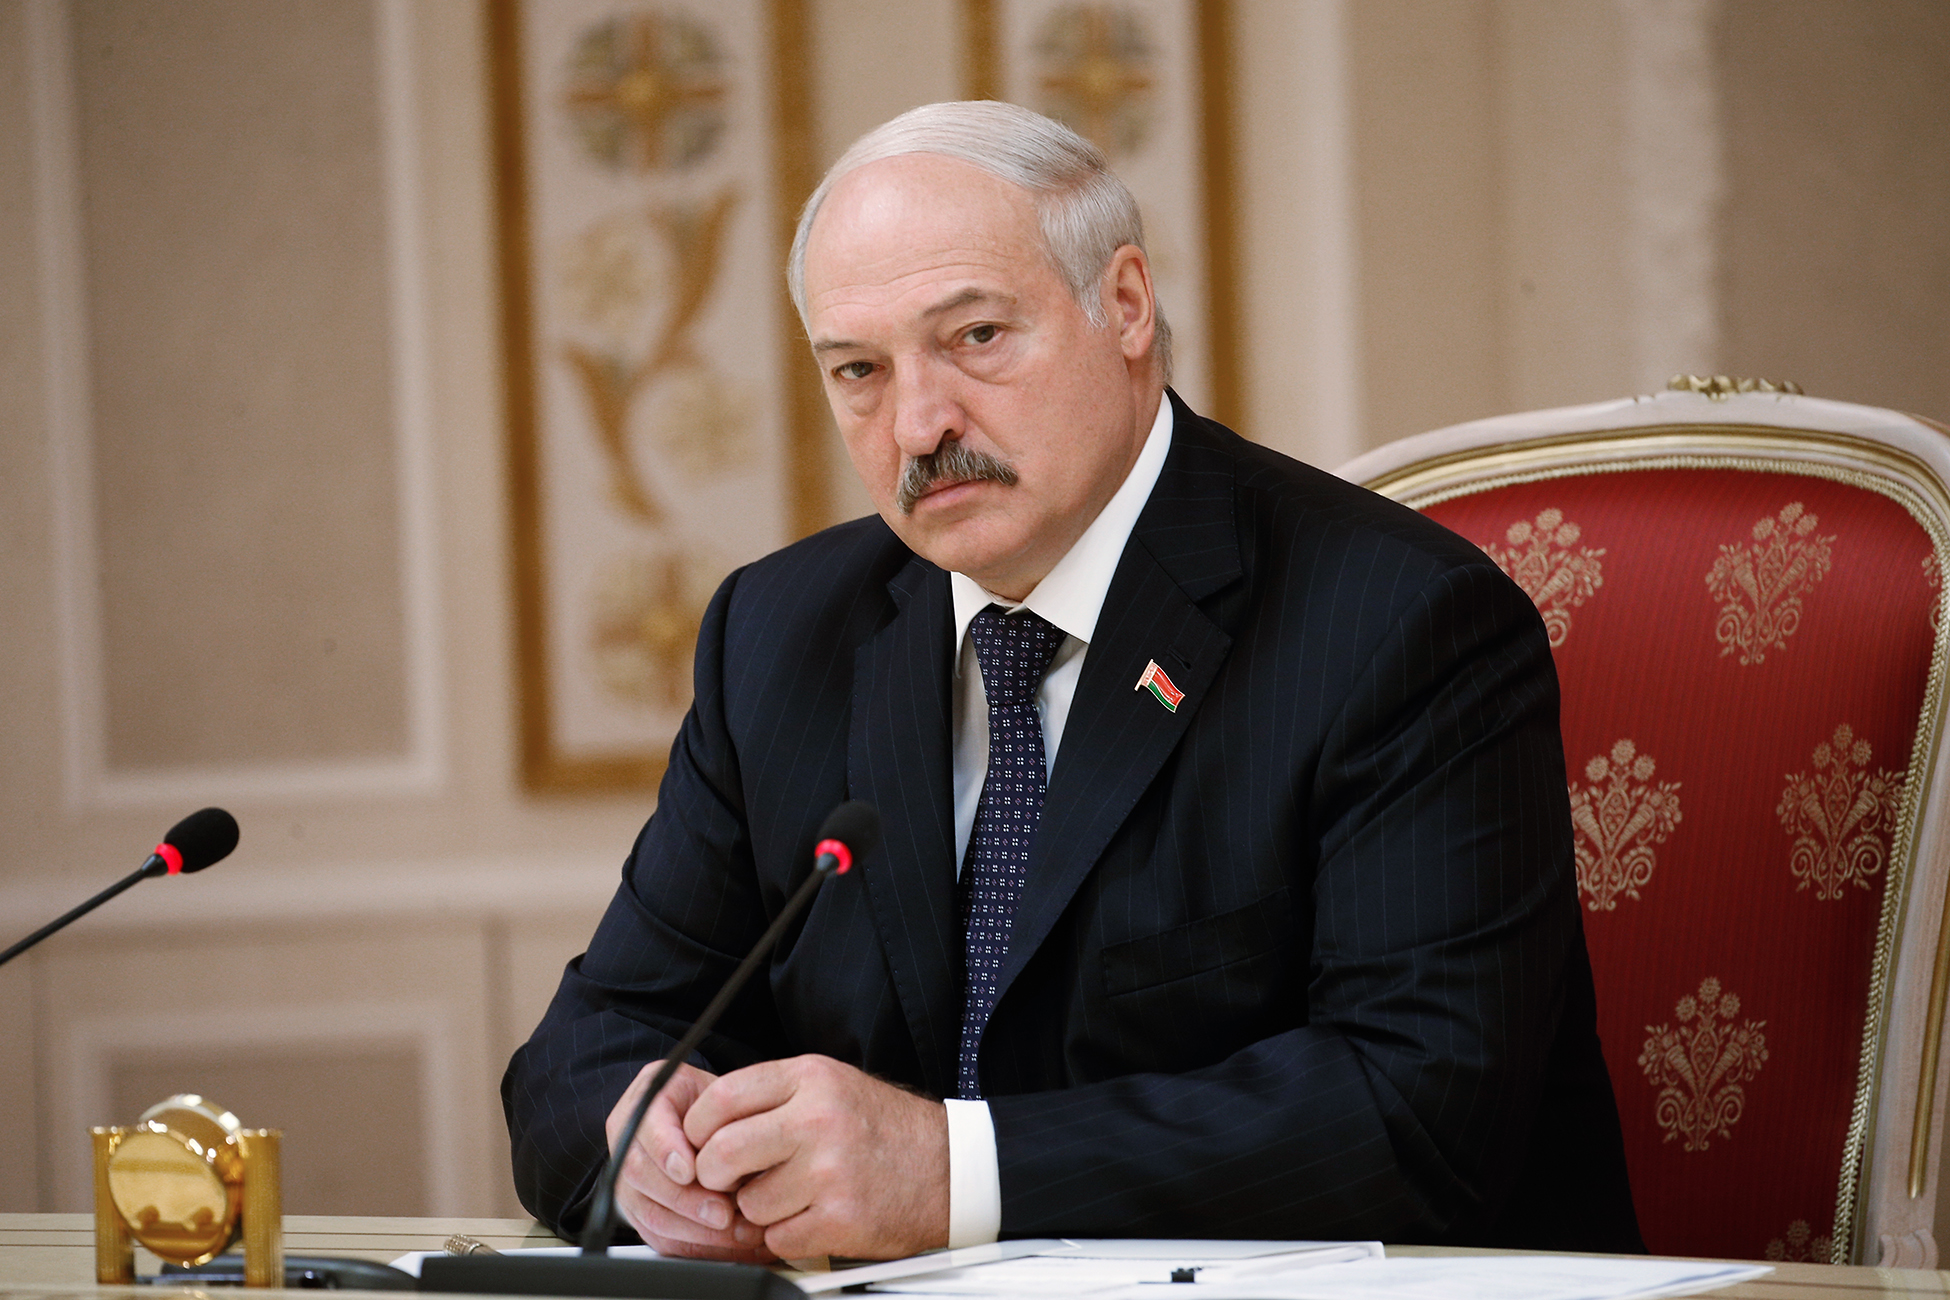 Lukaşenko Qərb qarşısında şərt qoydu: “Bunu dayandırmasanız...!